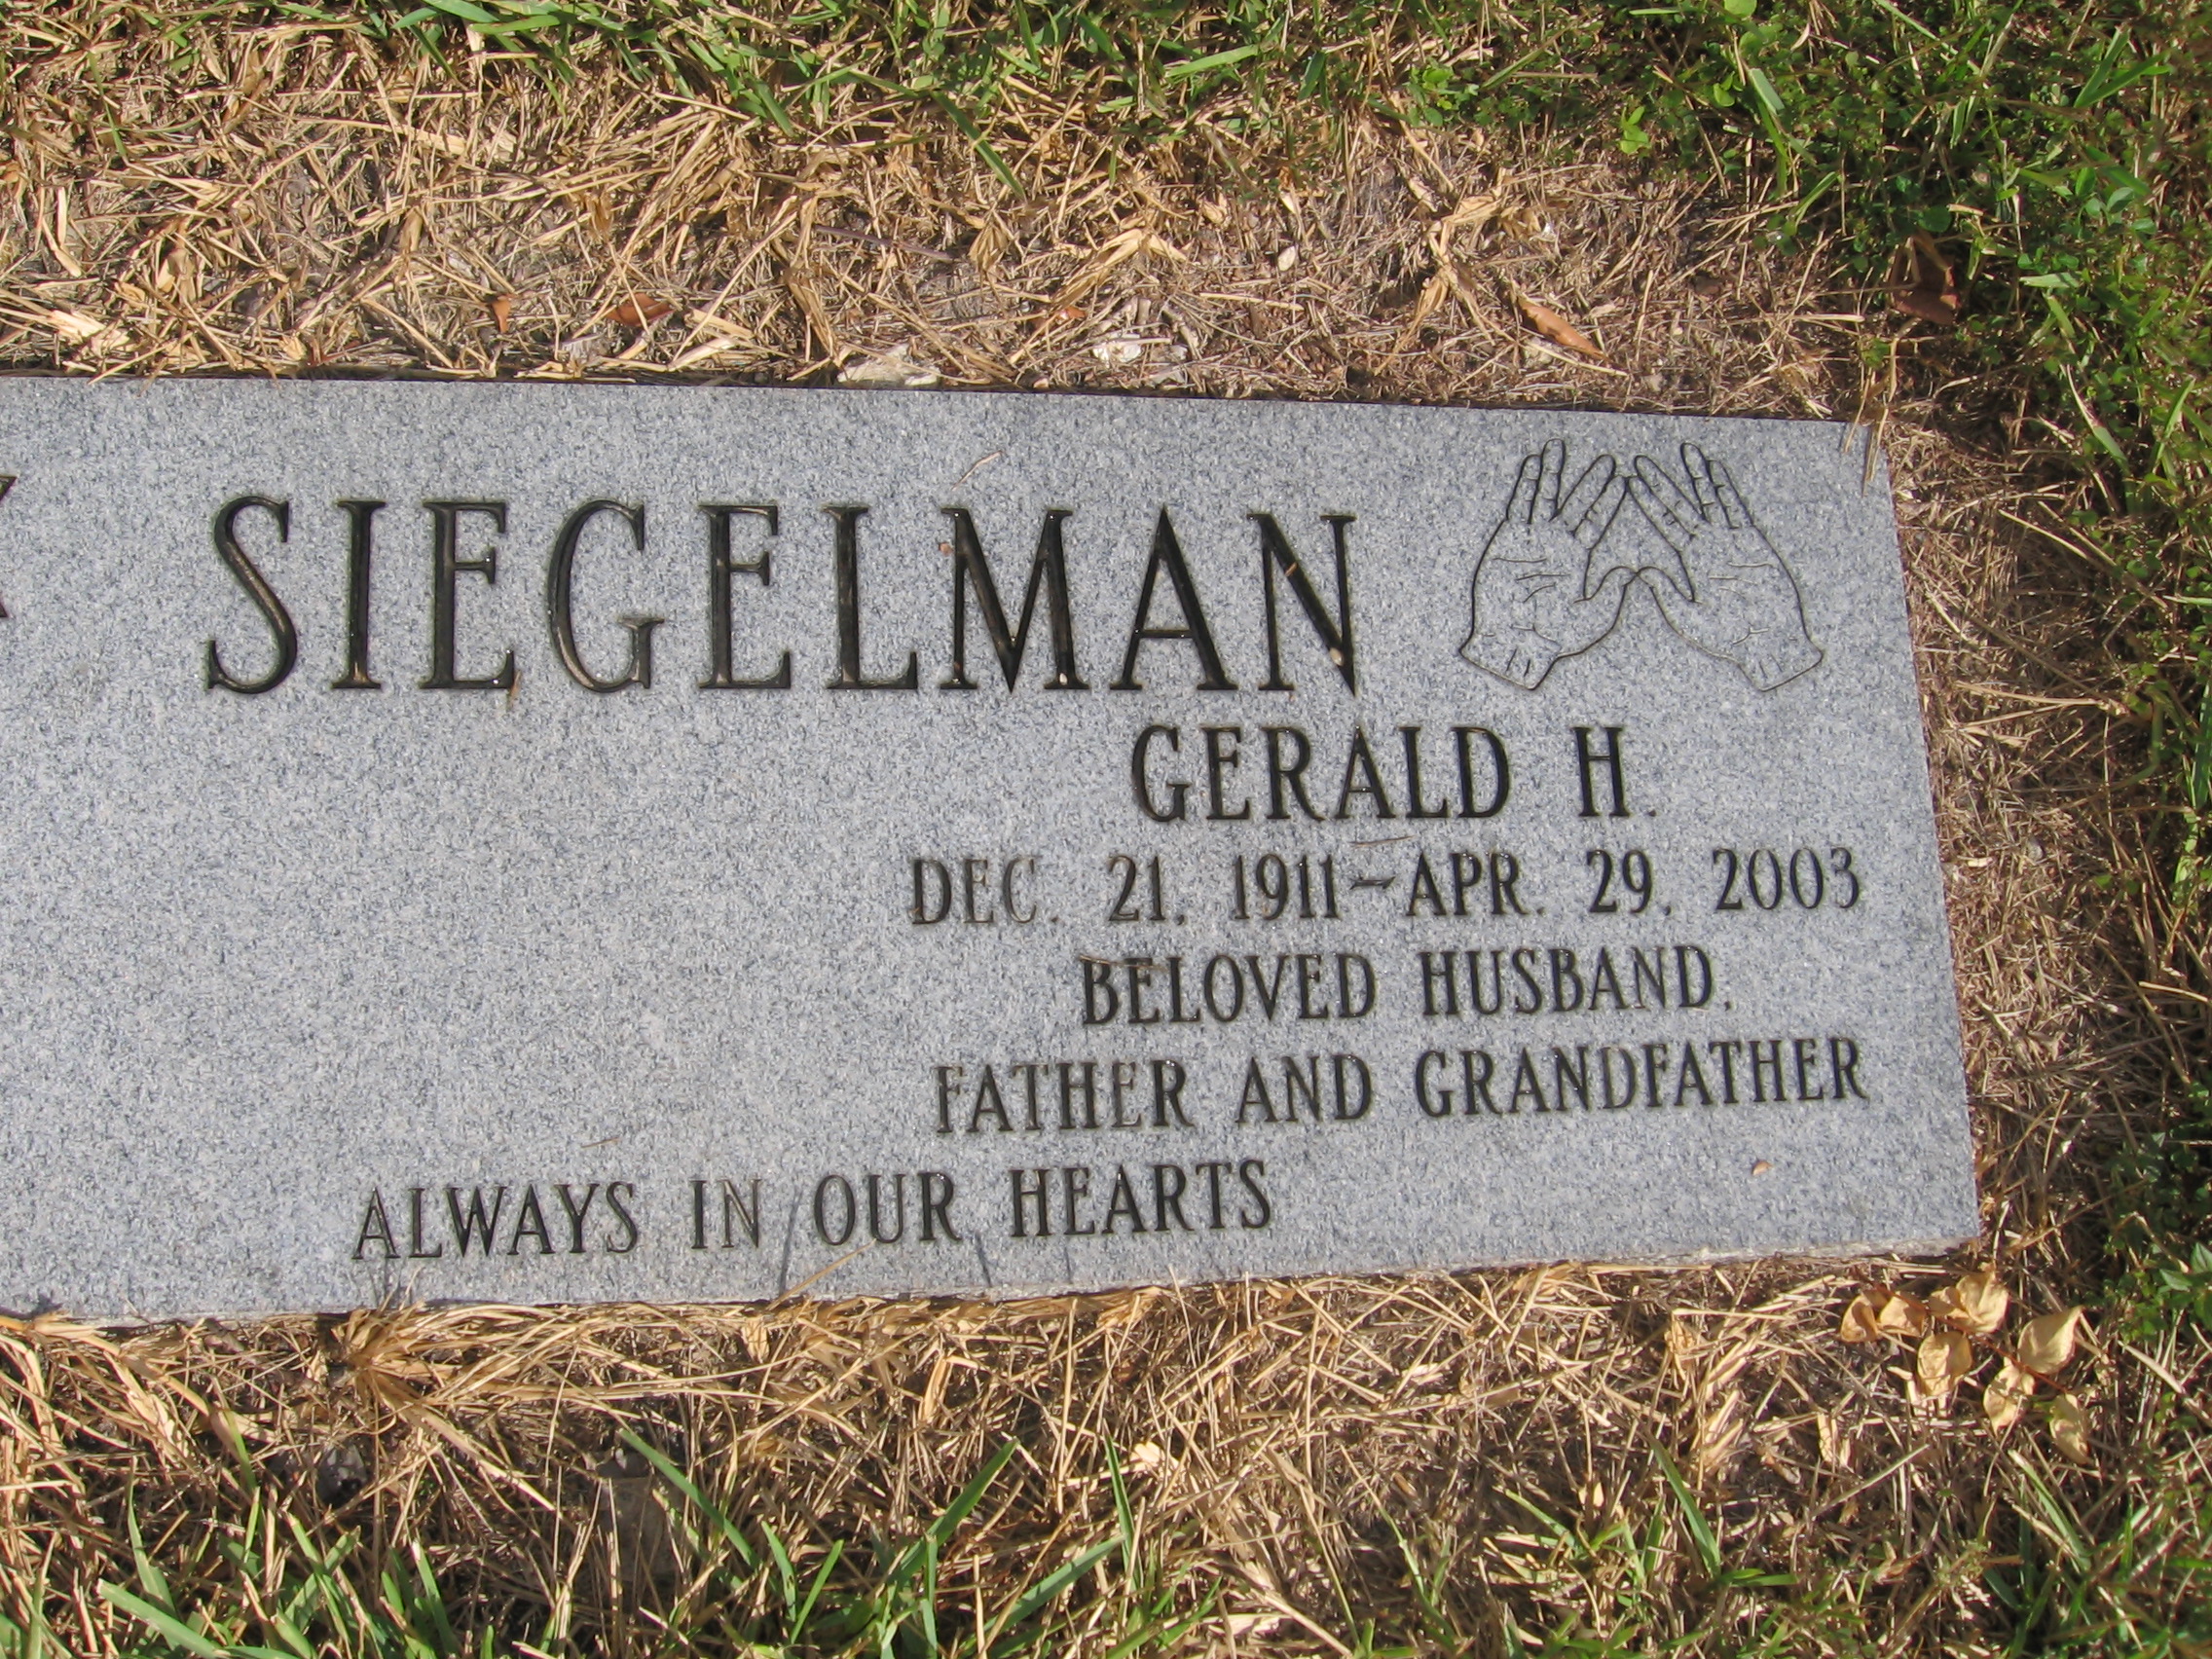 Gerald H Siegelman